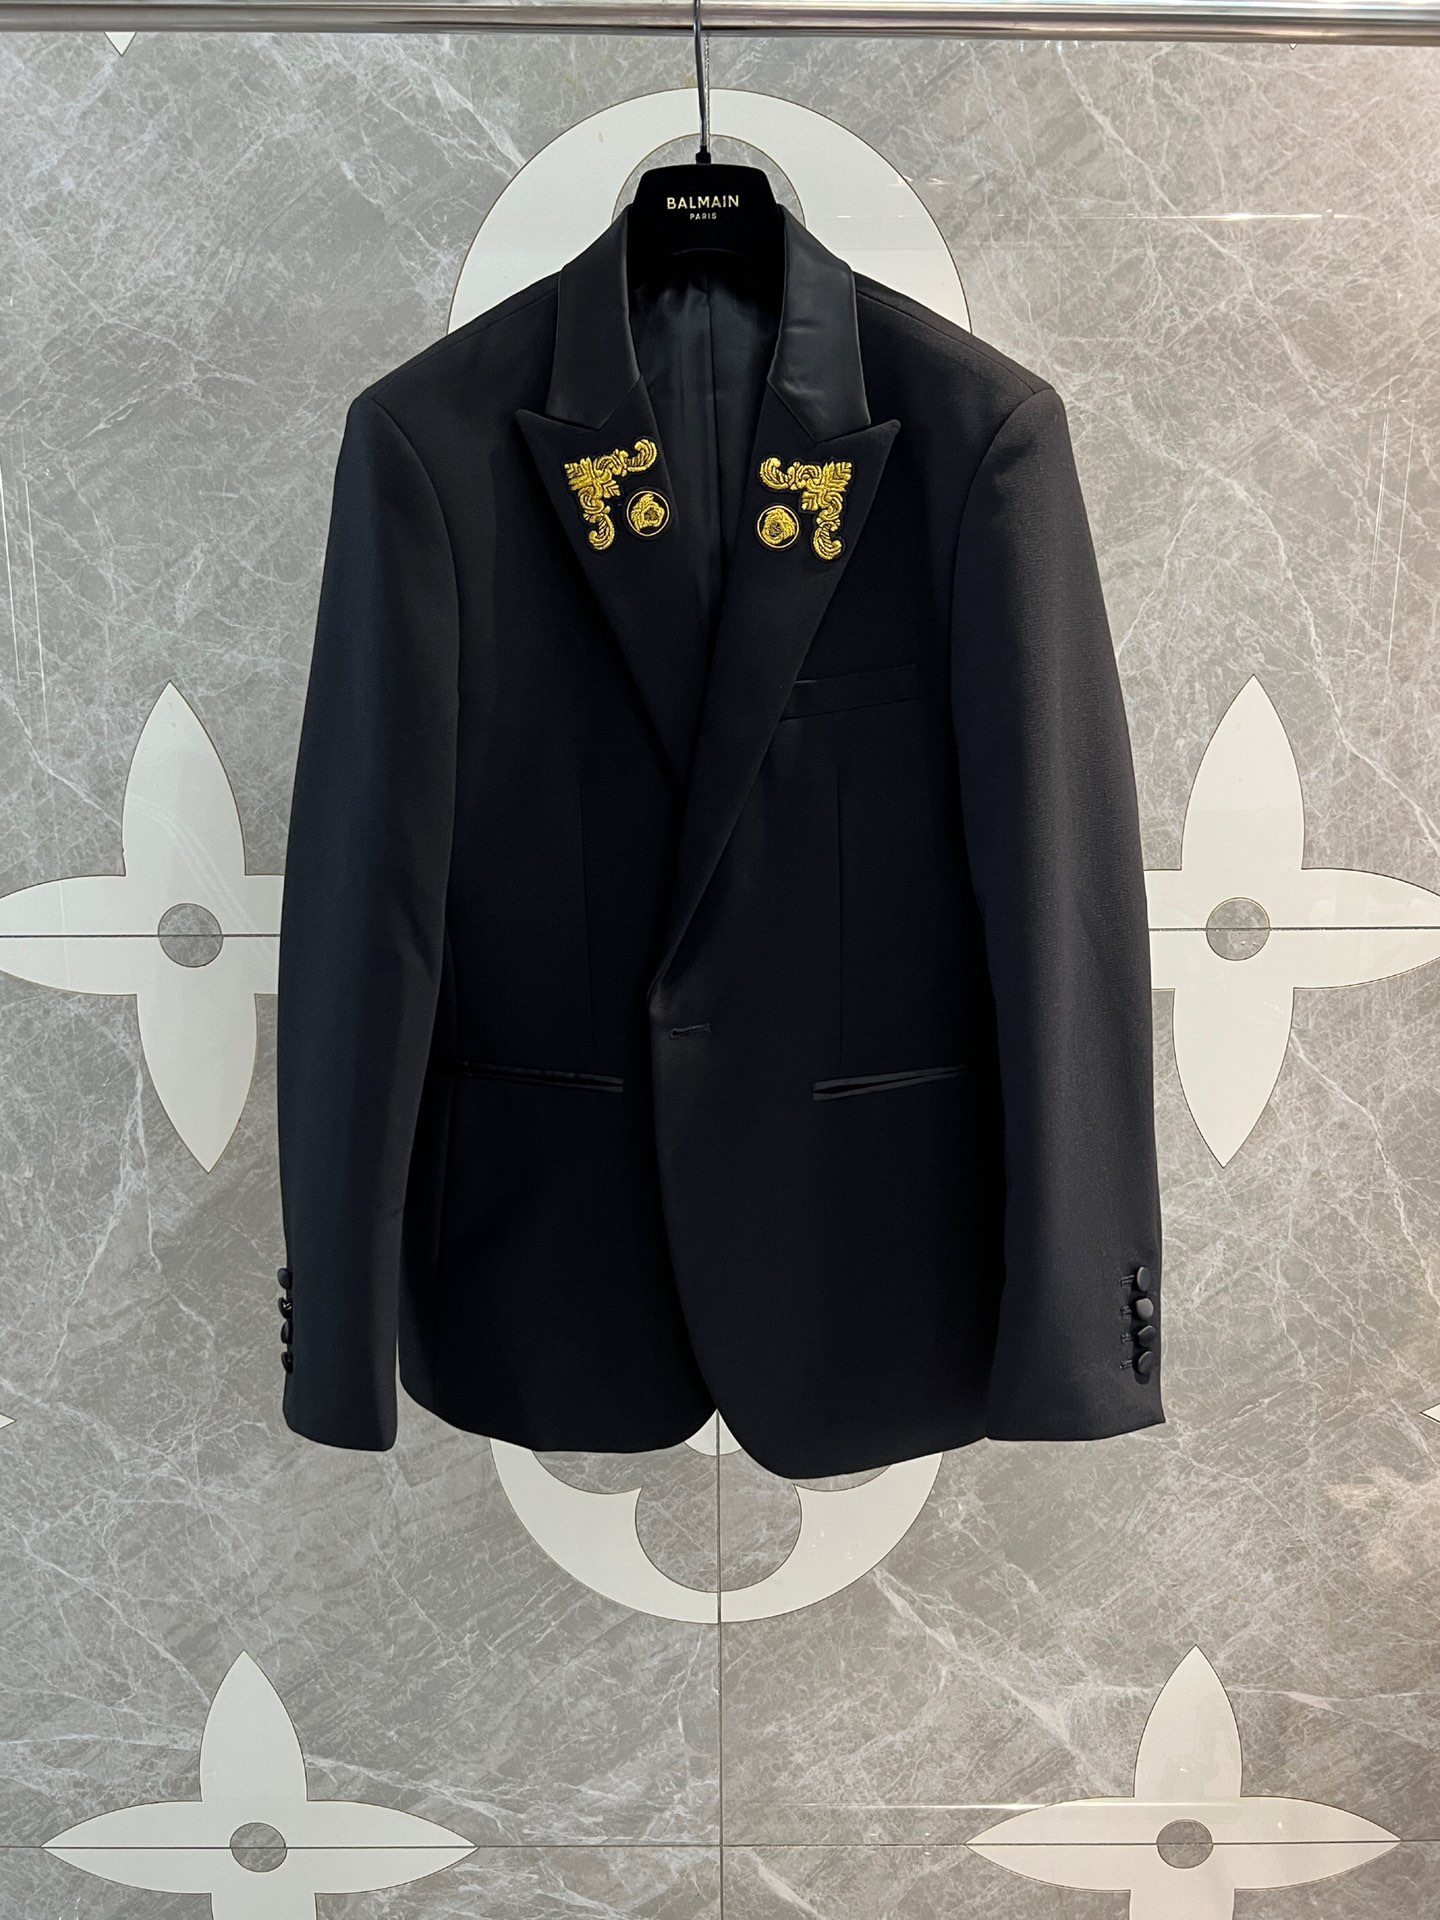 Versace Business Suit